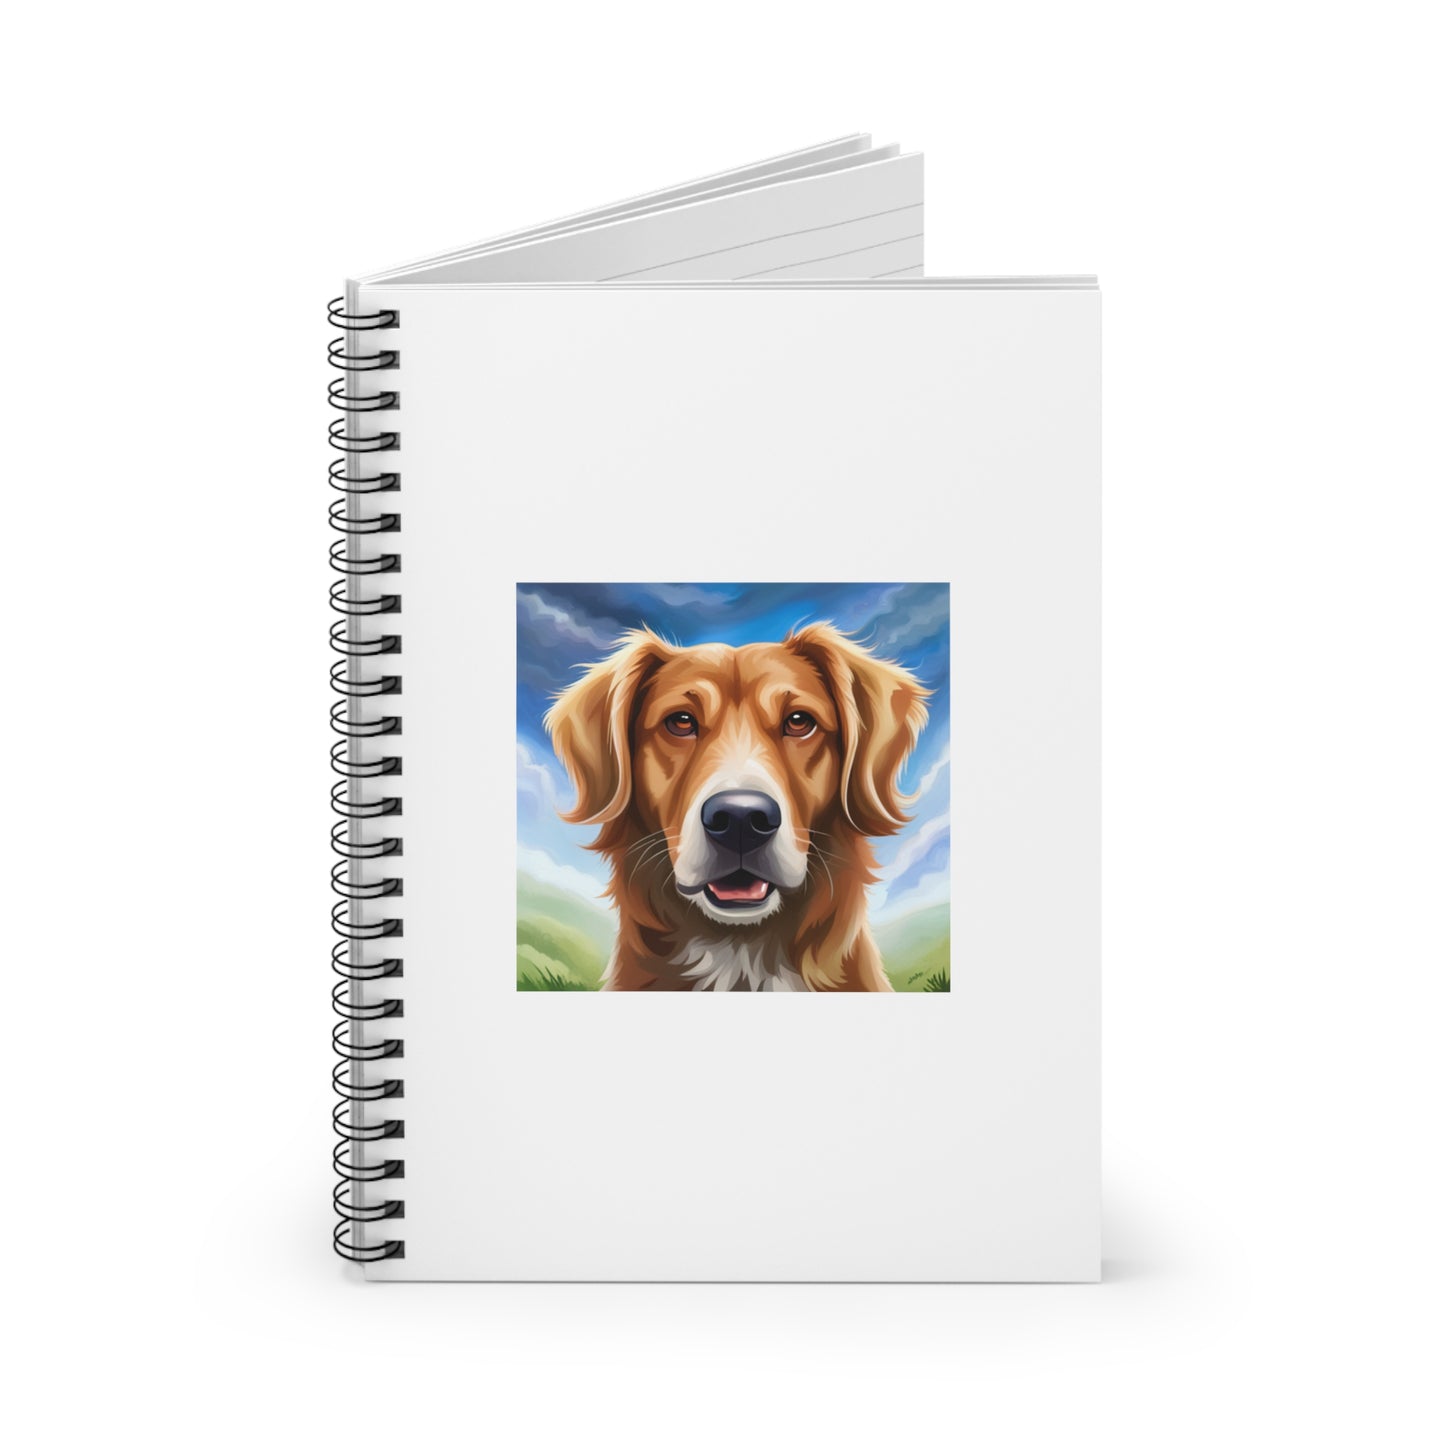 Dog Spiral Notebook - Ruled Line